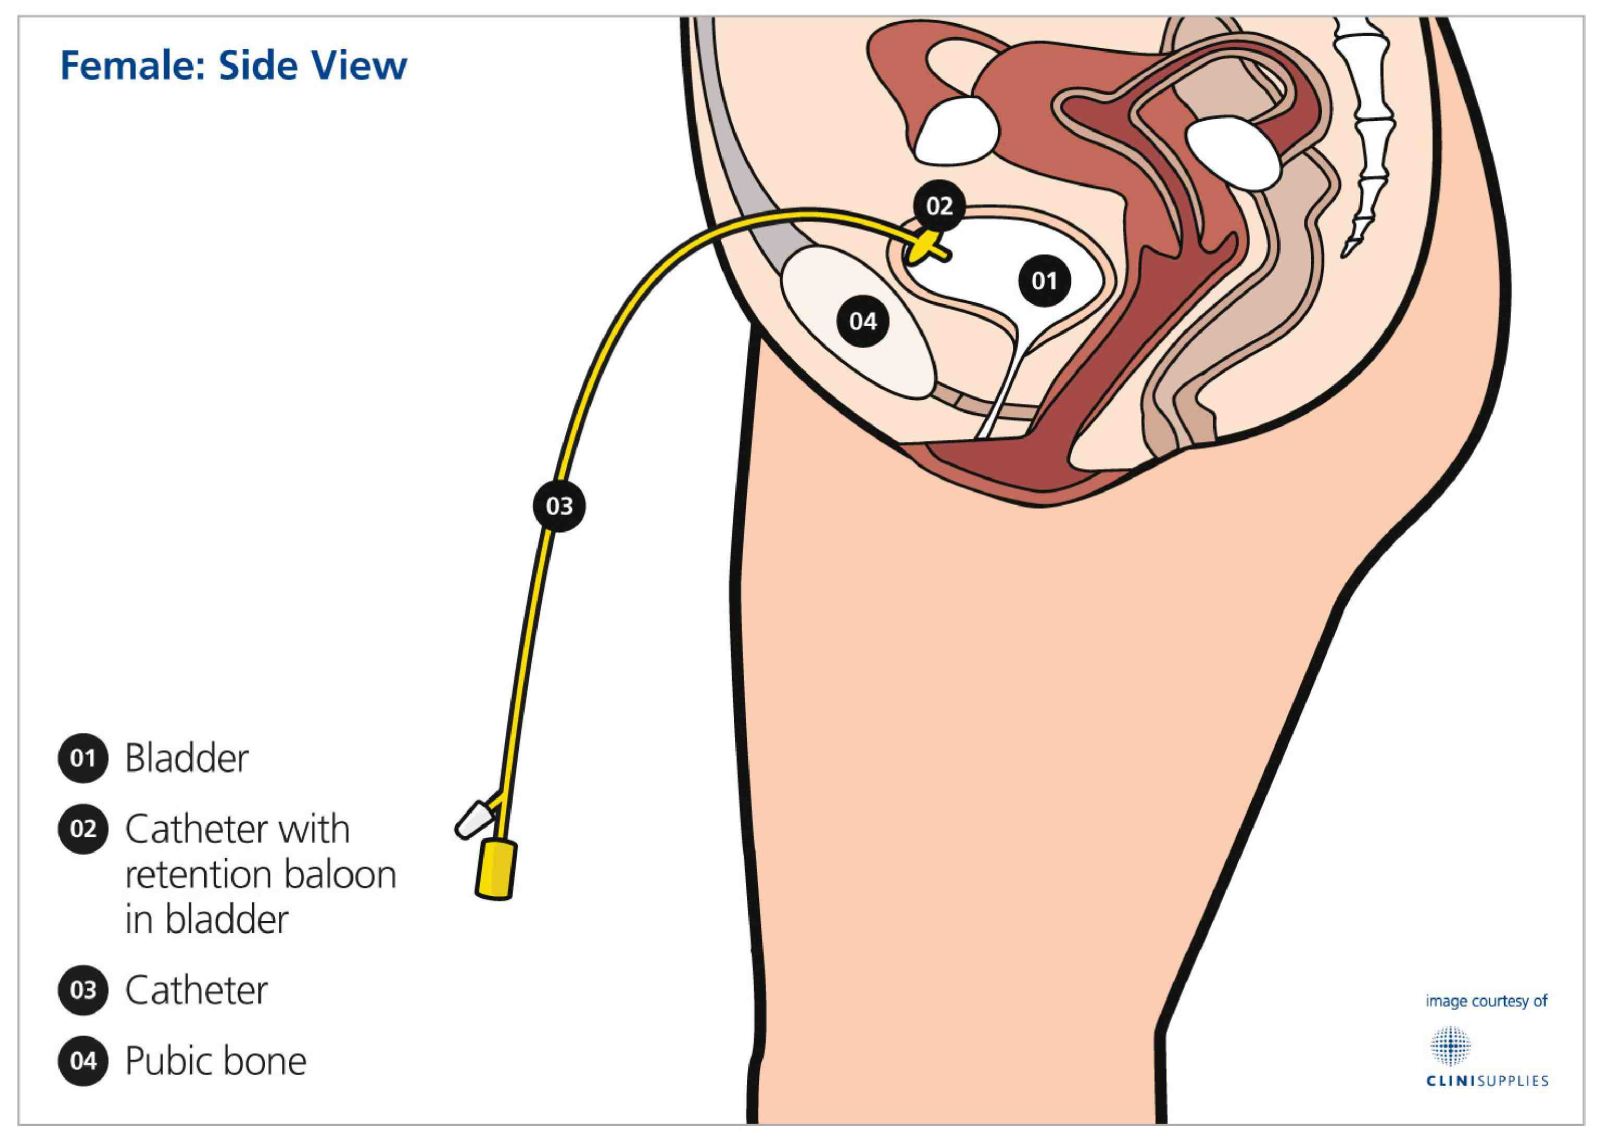 Bdsm female catheter